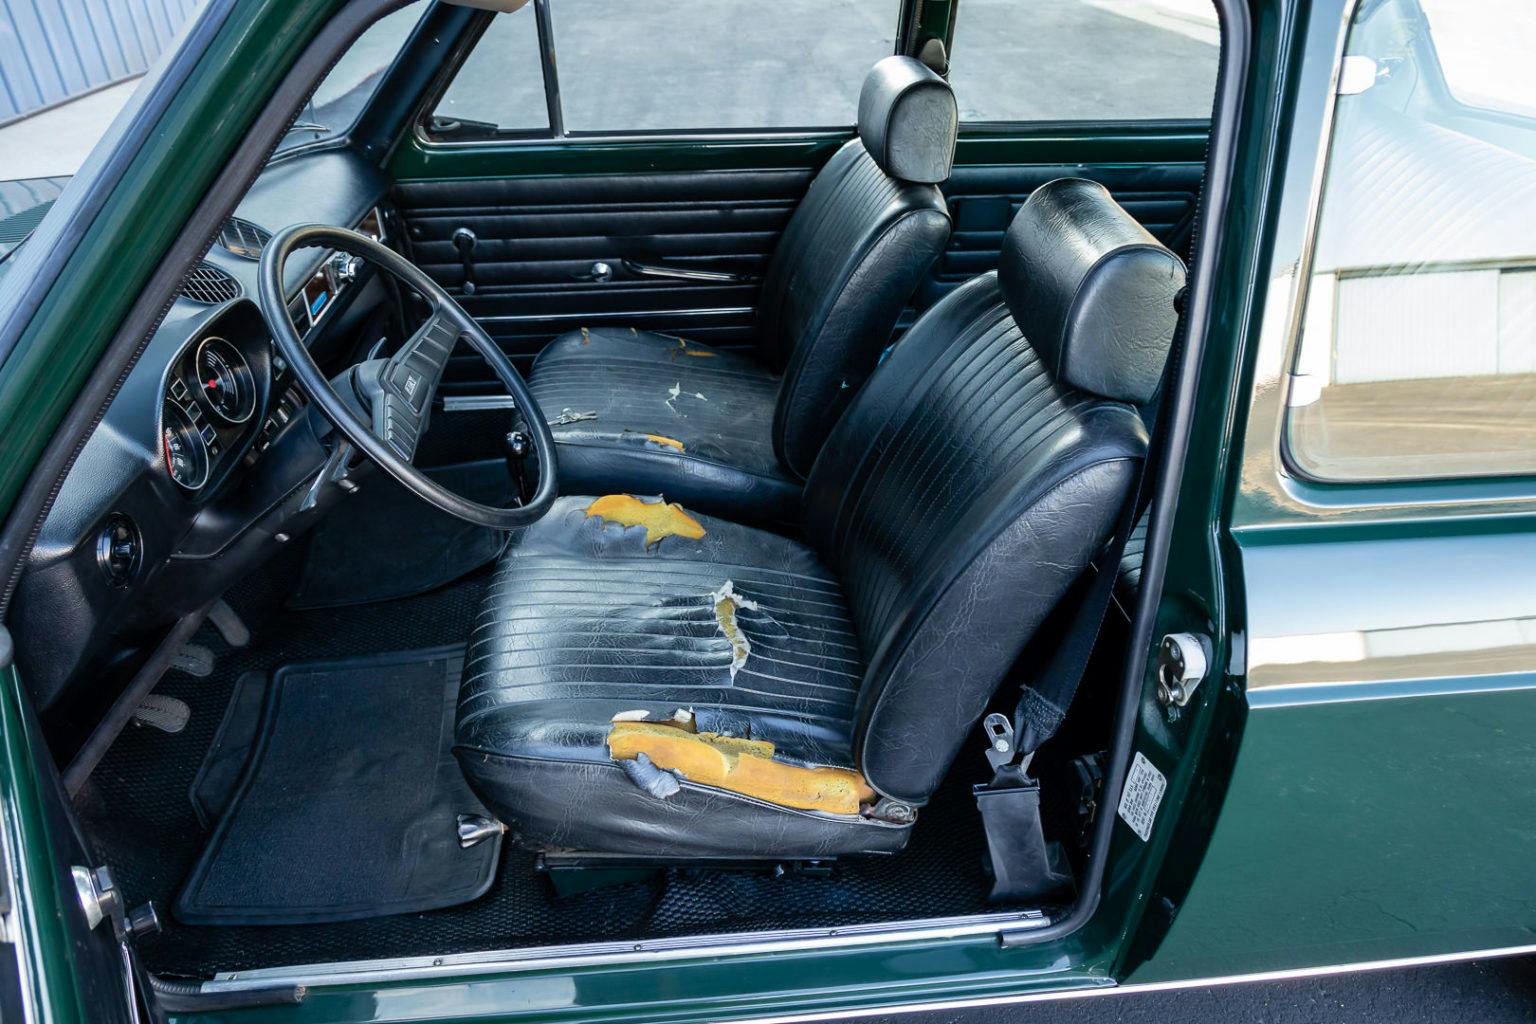 Tom Hanks' Fiat 128 interior 2